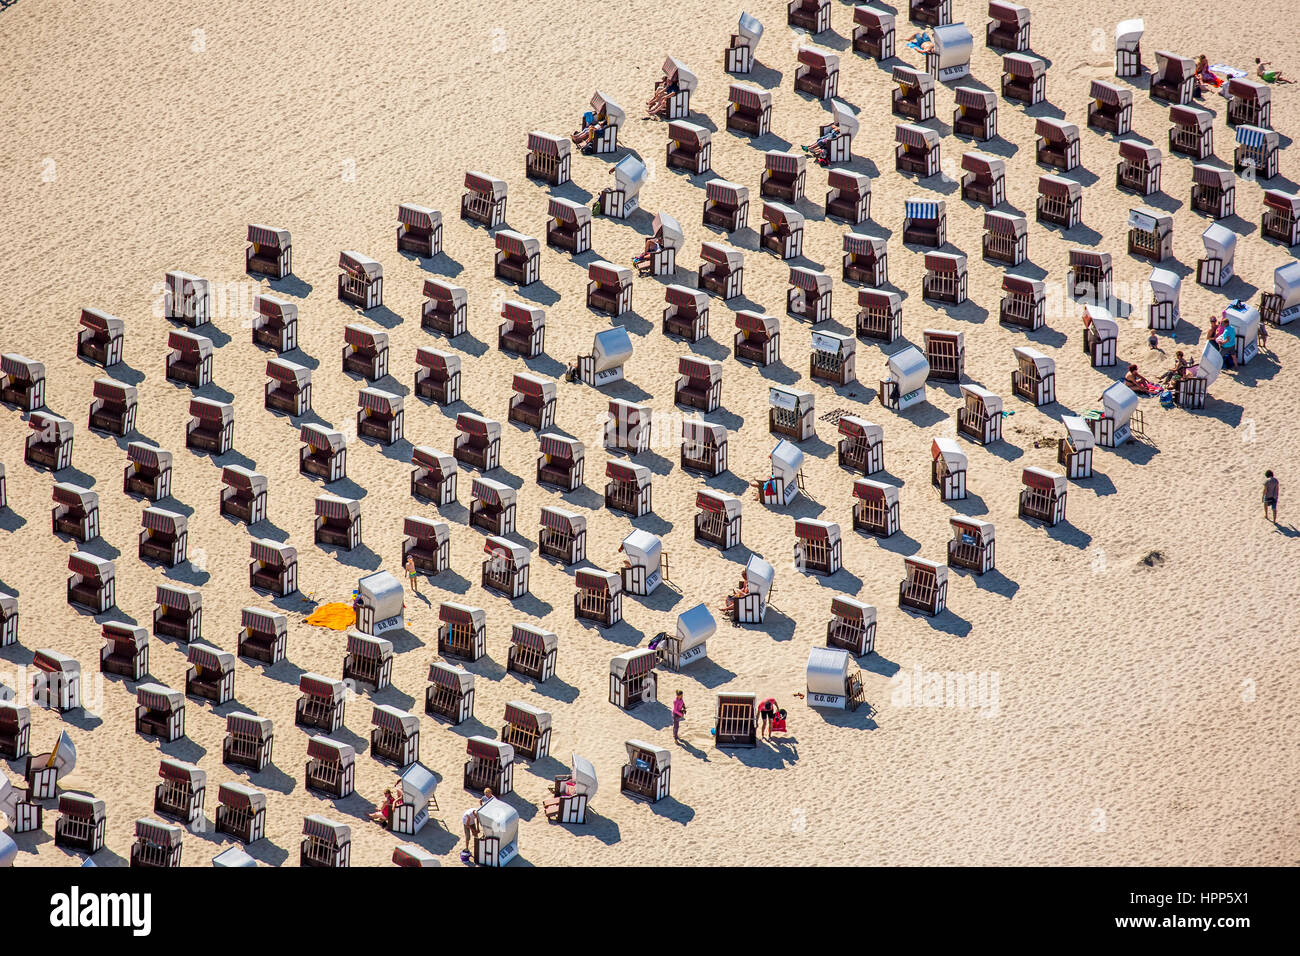 Strandkörbe am Sandstrand, Sellin, am Baltischen Meer, Ostseeküste, Mecklenburg-Western Pomerania, Deutschland Stockfoto